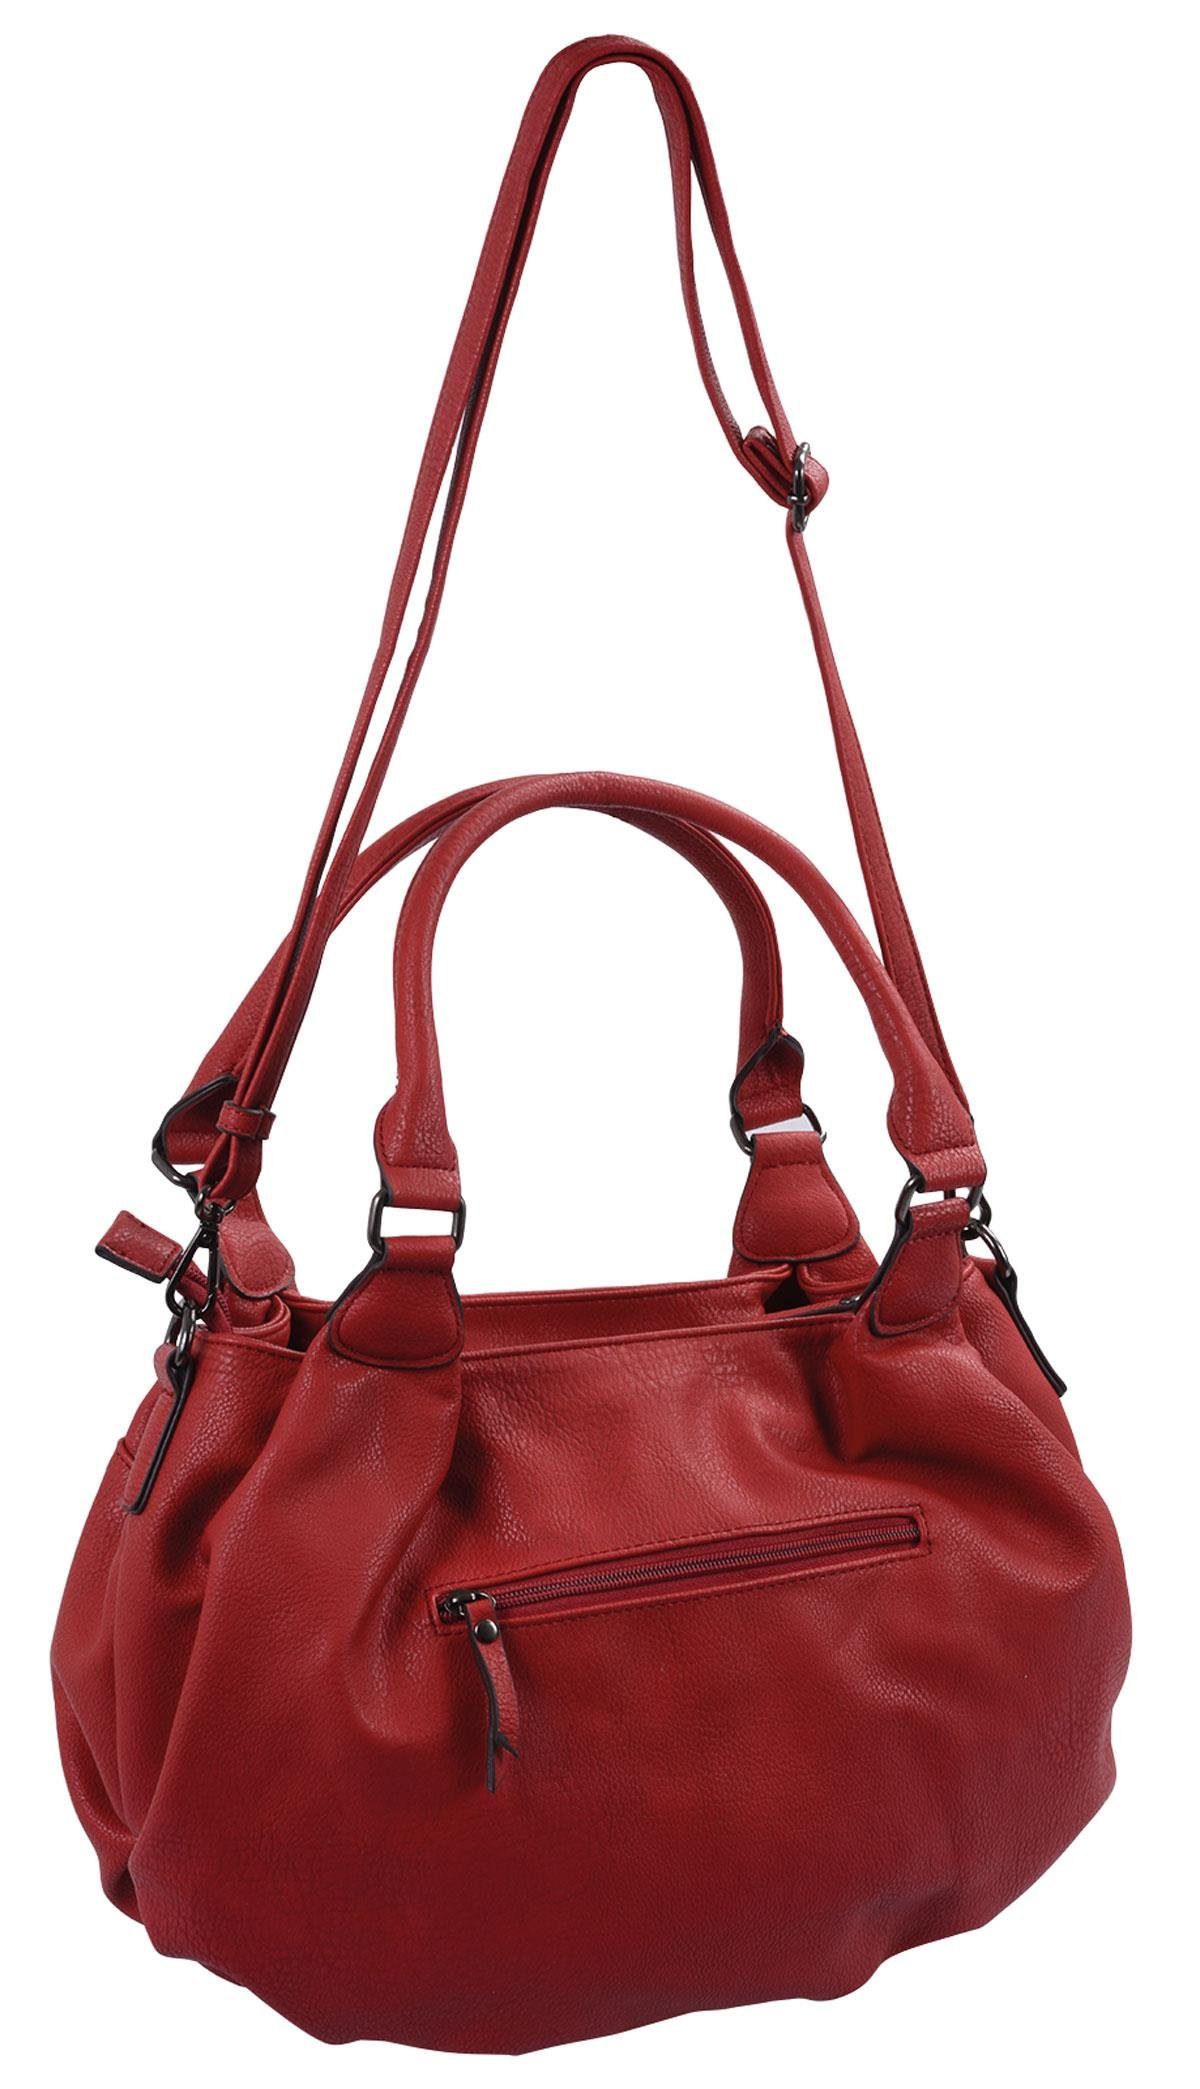 Basic Handtasche knautschige Handtasche mit kurzen und langem Henkel, rot